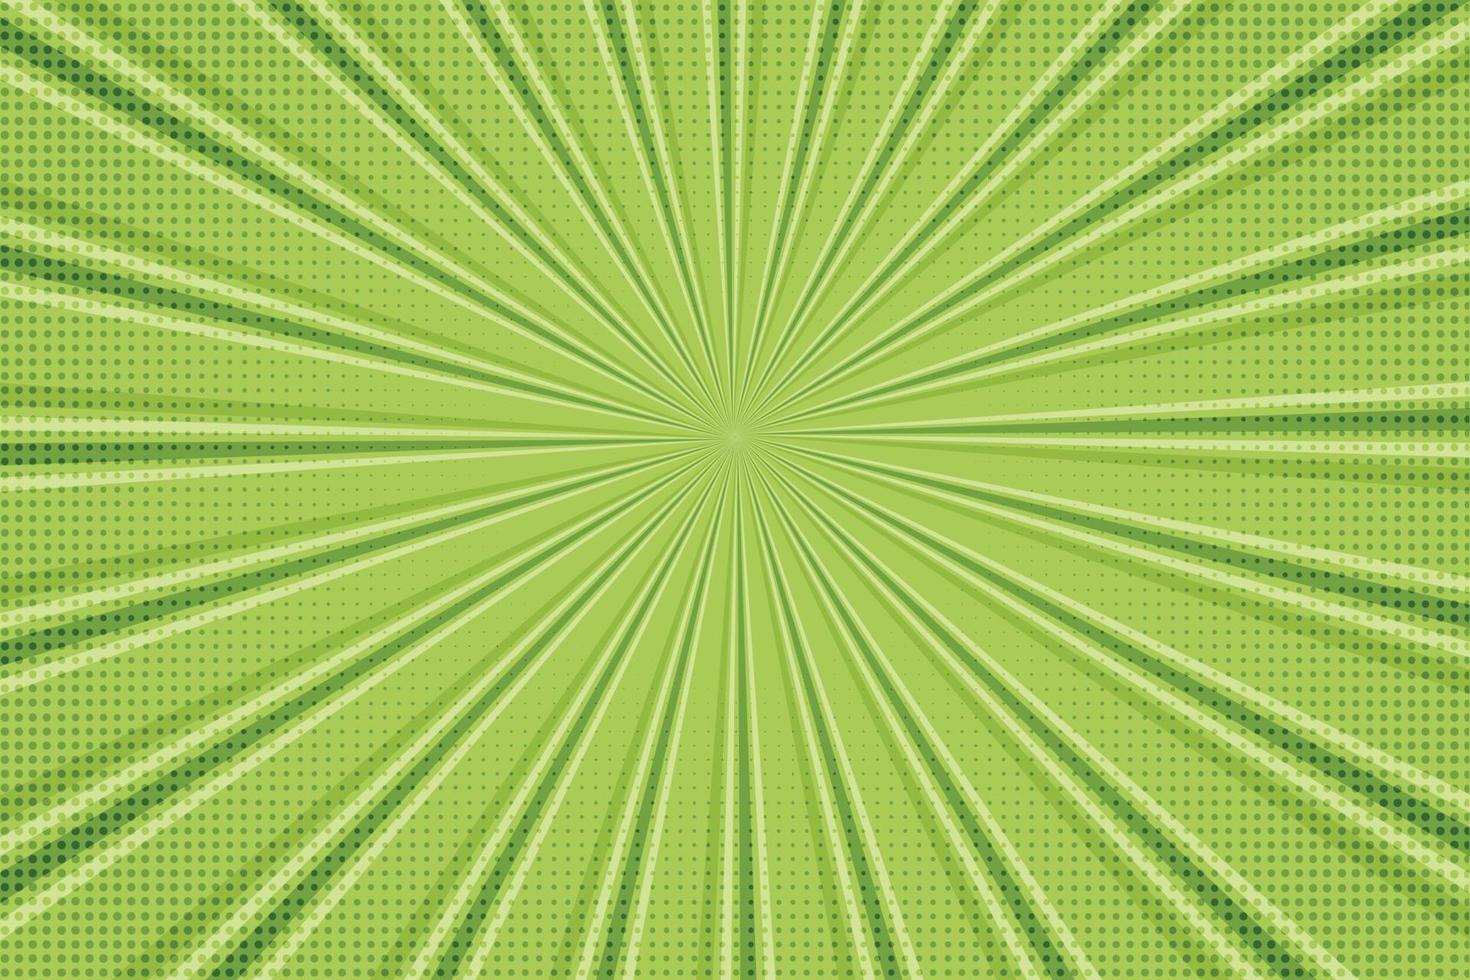 groen retro zonnestraal achtergrond vector voor vrij downloaden